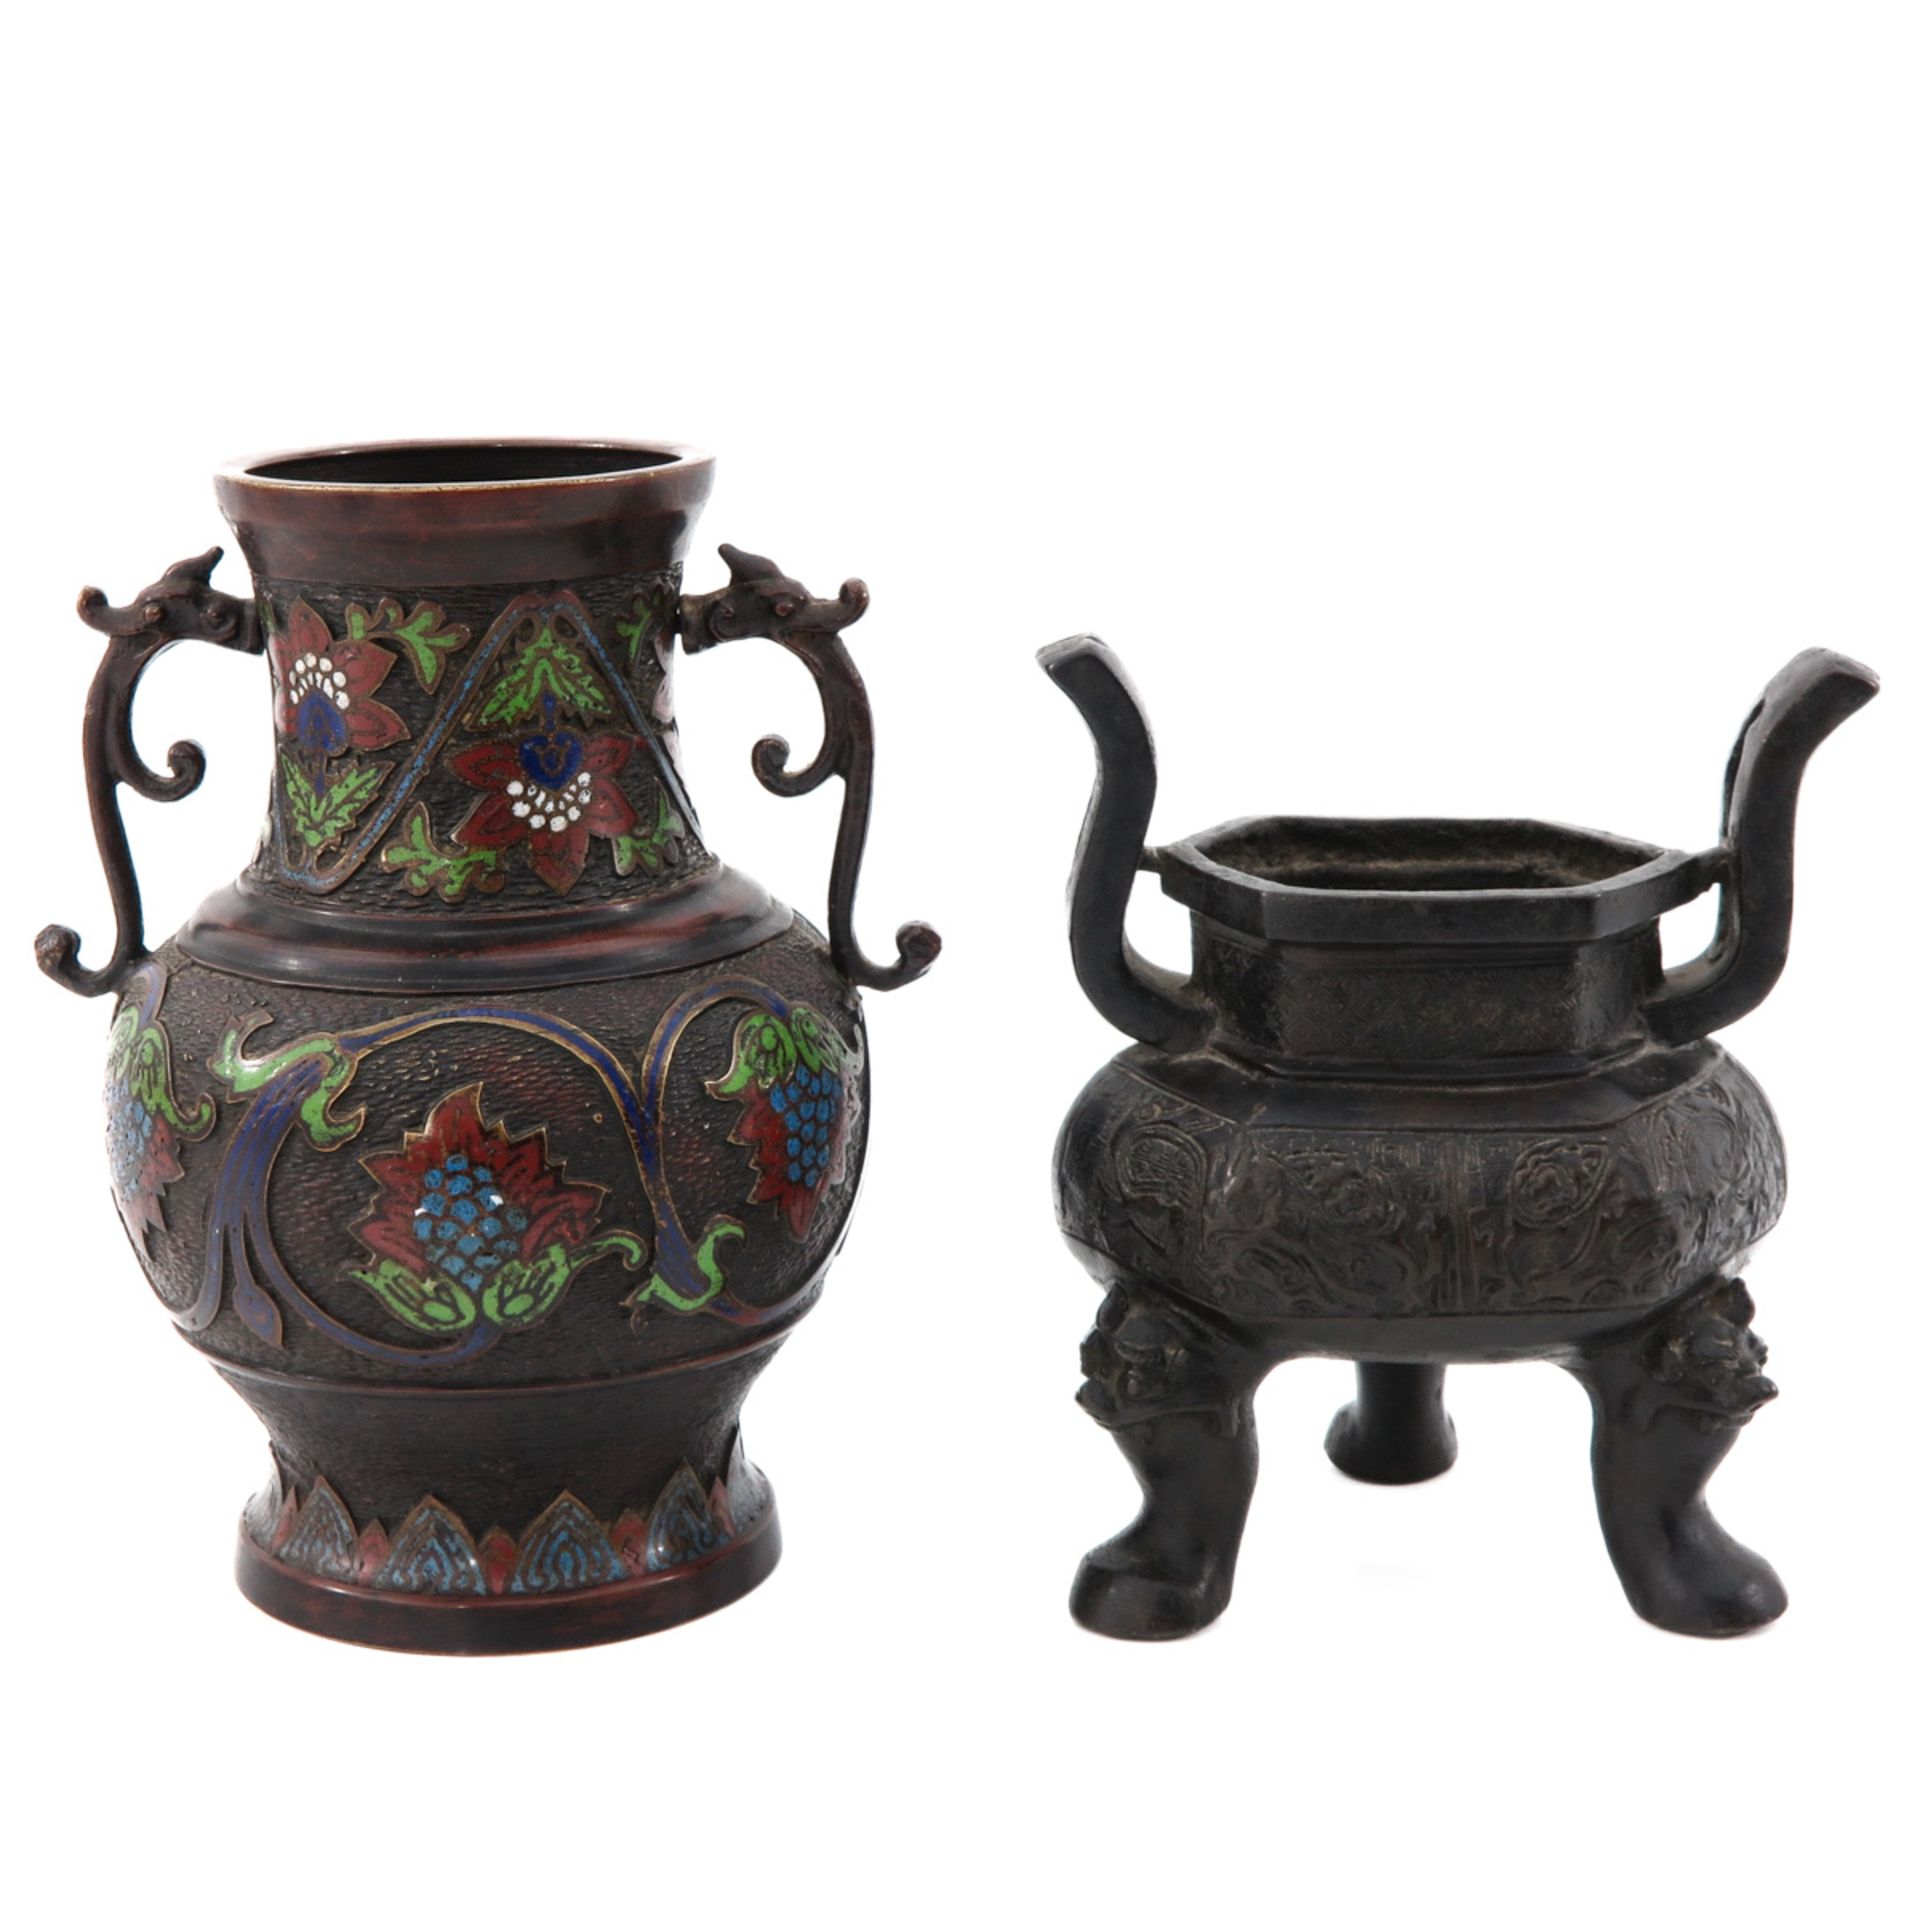 A Bronze Censer and Cloisonne Vase